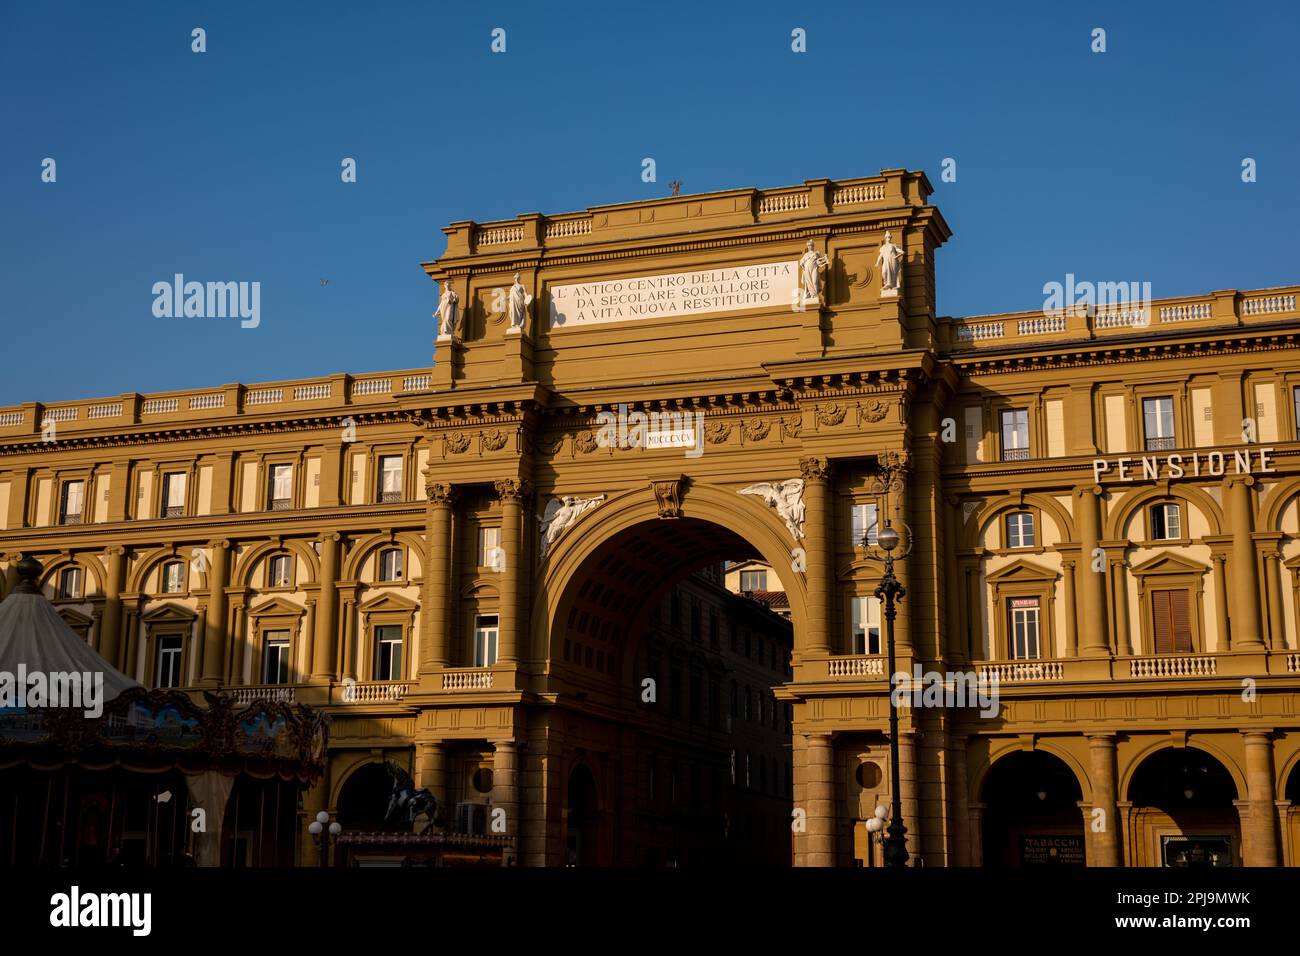 The arch in Piazza della Repubblica, Florence. Stock Photo